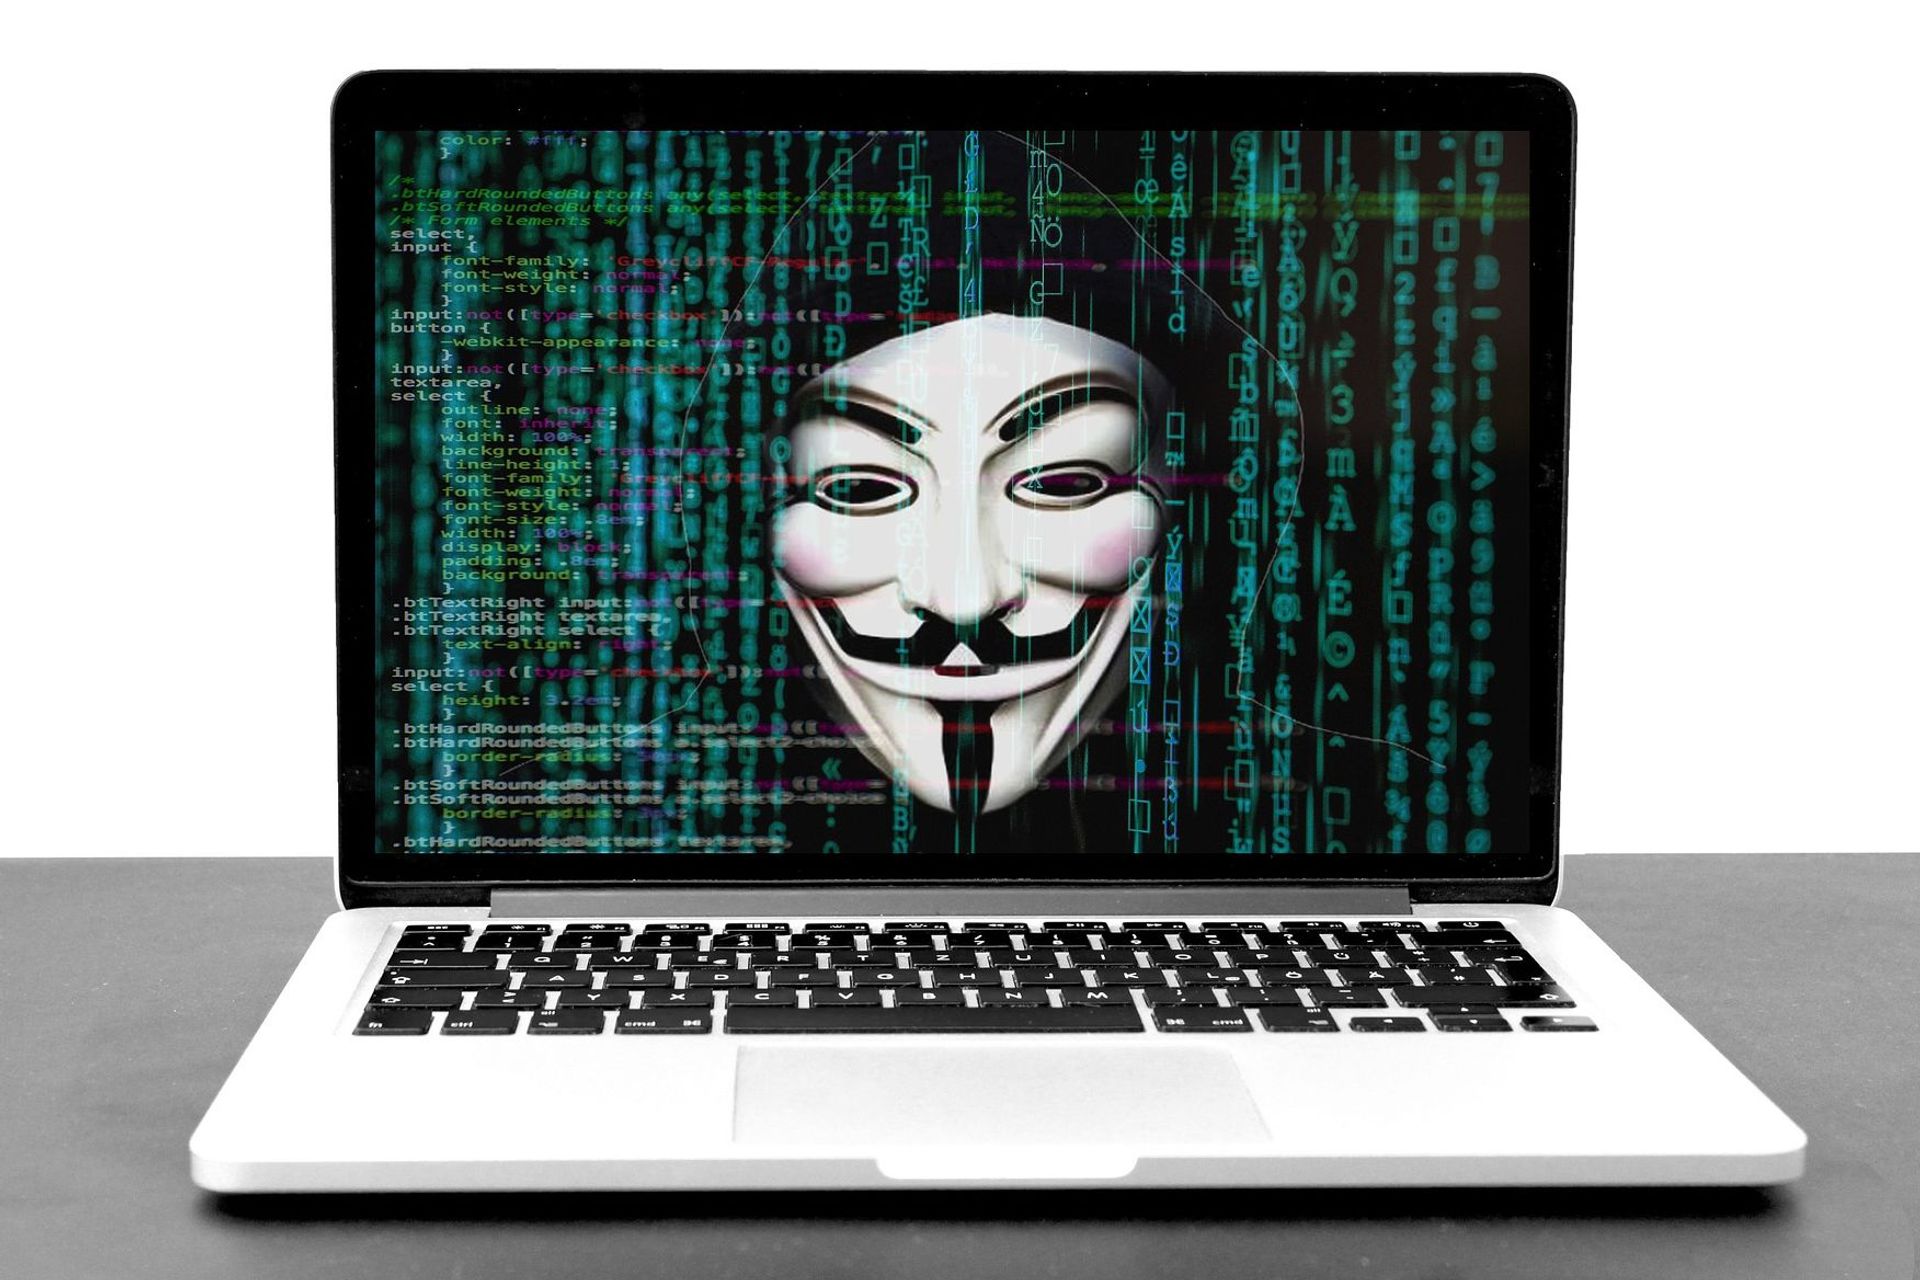 Hakkerointi ja tietojenkalastelu ovat yksi verkon suurimmista vaaroista